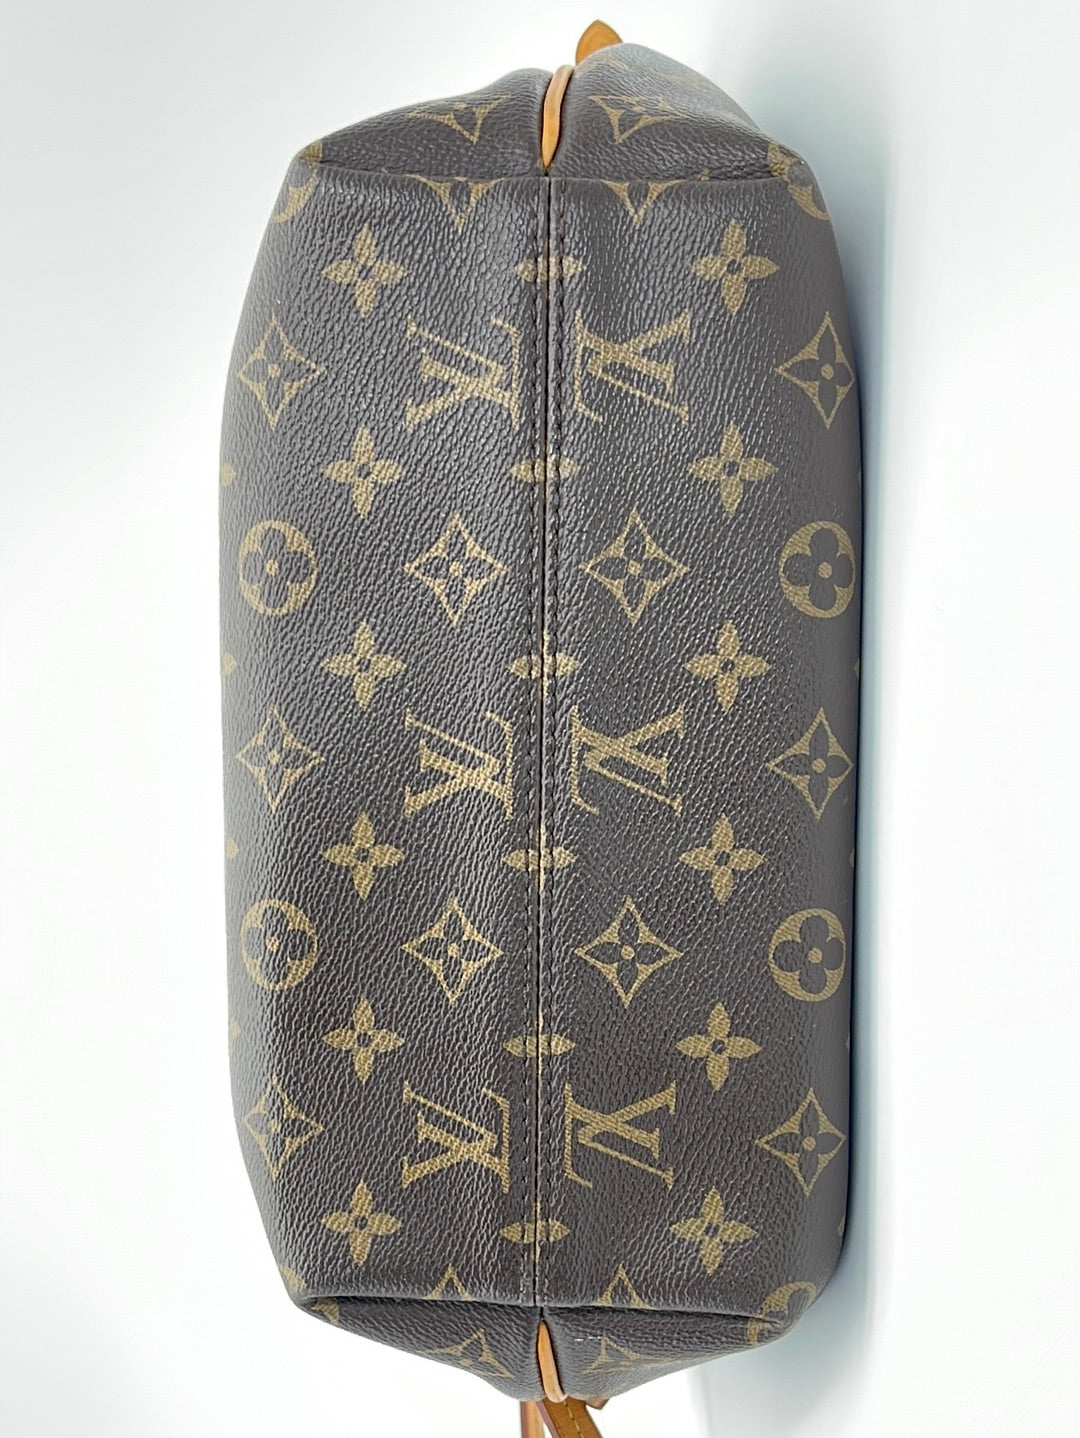 Preloved Louis Vuitton Turenne MM (Medium) Monogram Canvas Handbag FL3 –  KimmieBBags LLC